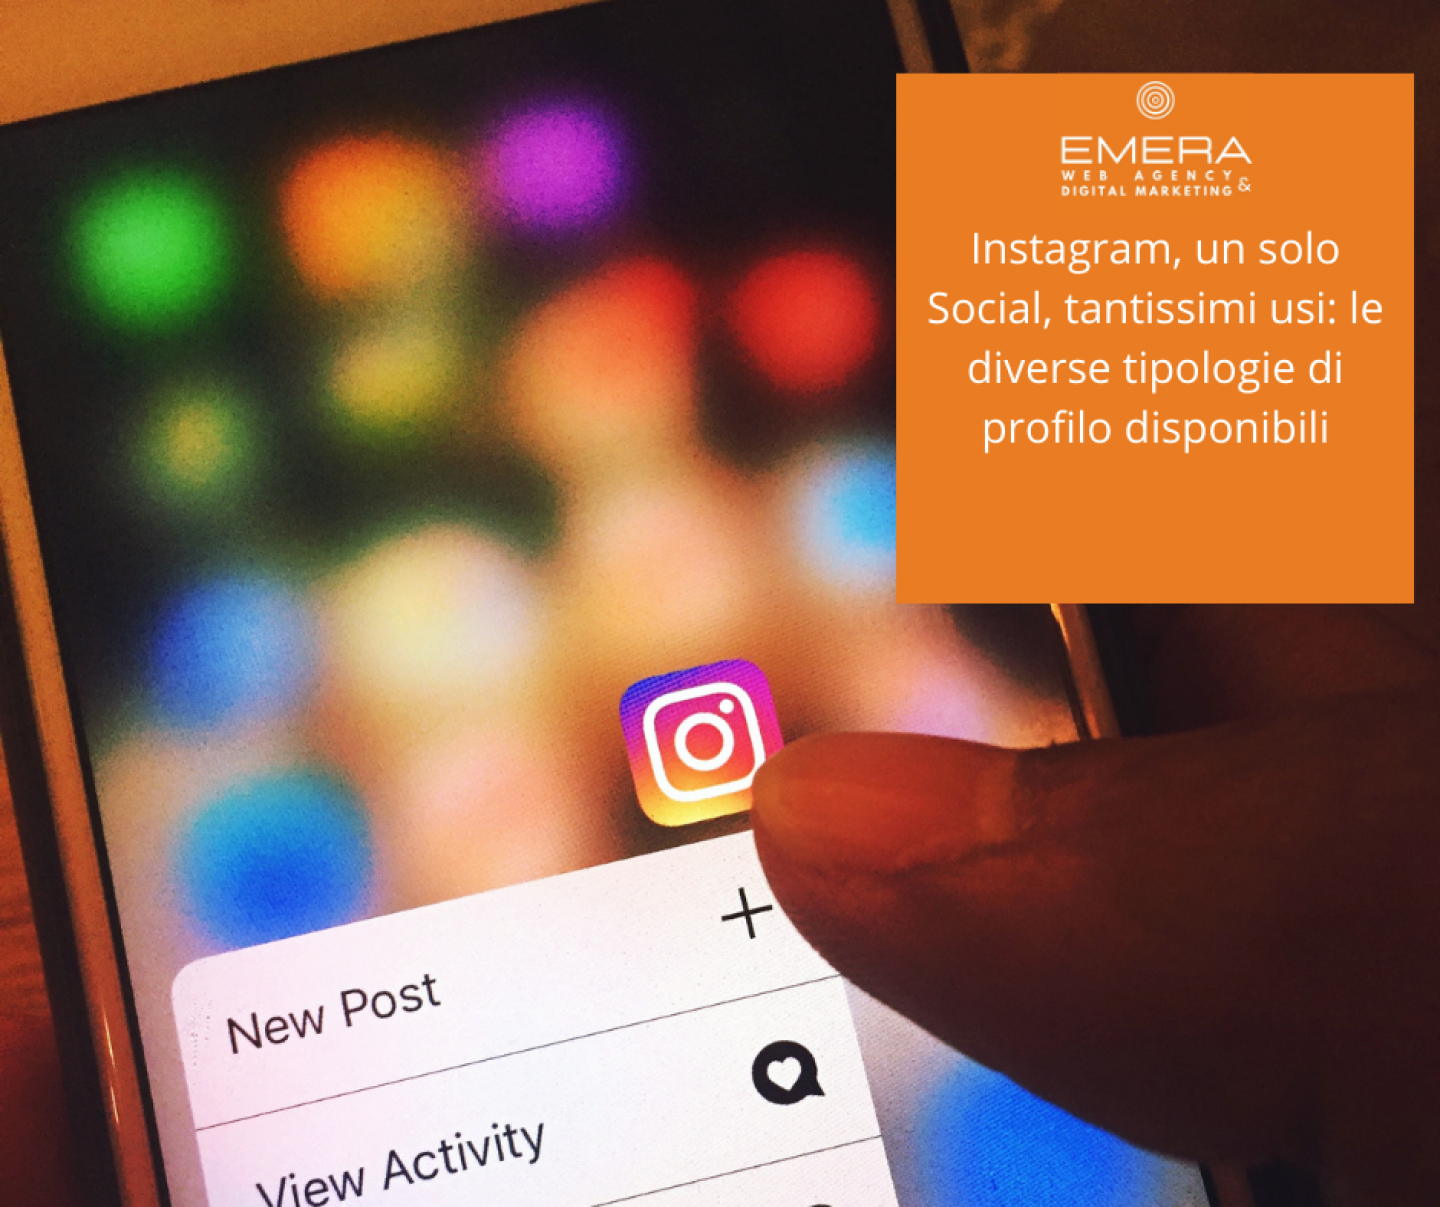 Instagram, un solo Social, tantissimi usi le diverse tipologie di profilo disponibili